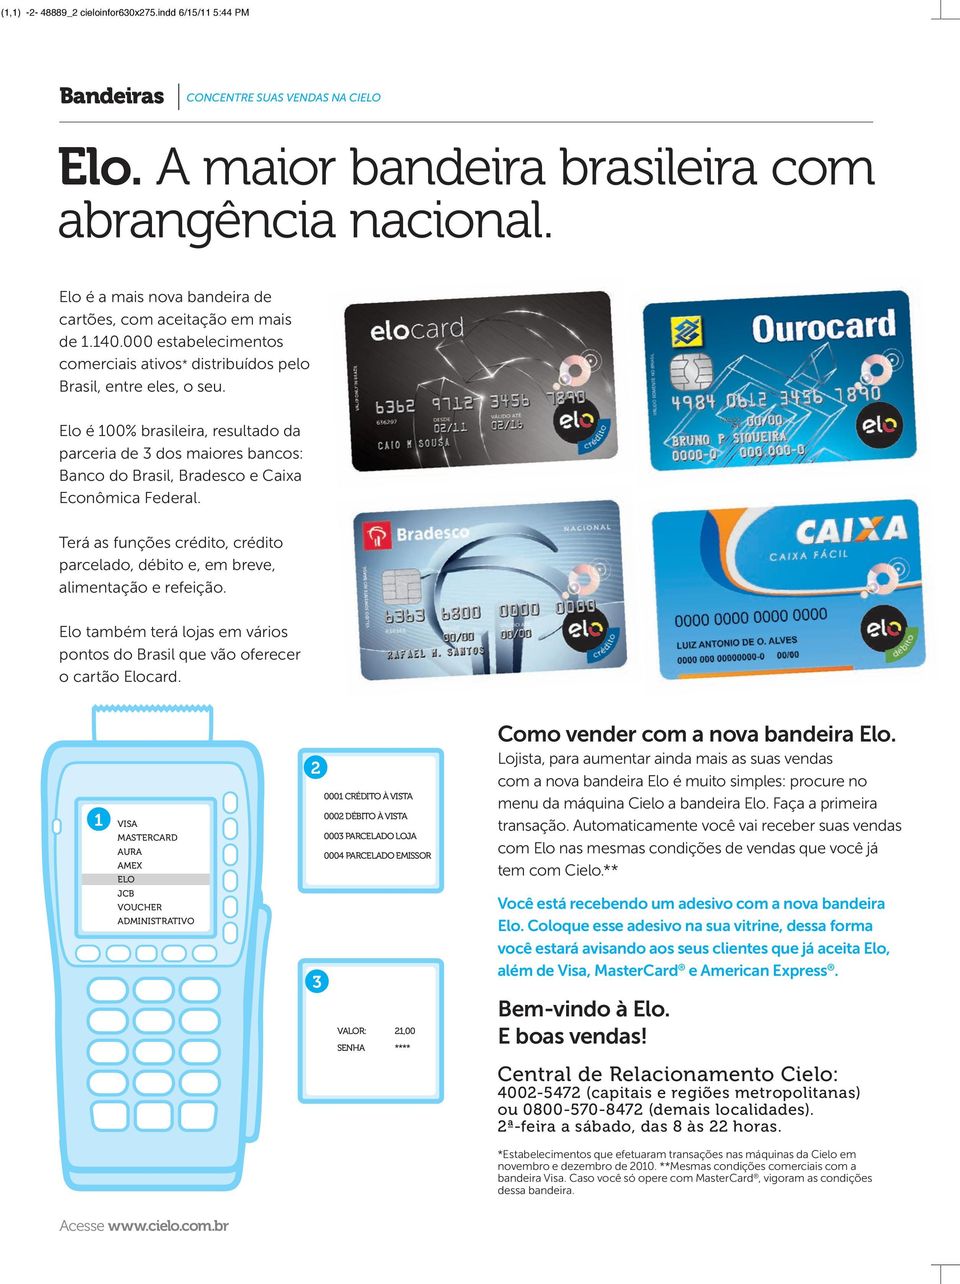 Elo é 100% brasileira, resultado da parceria de 3 dos maiores bancos: Banco do Brasil, Bradesco e Caixa Econômica Federal.